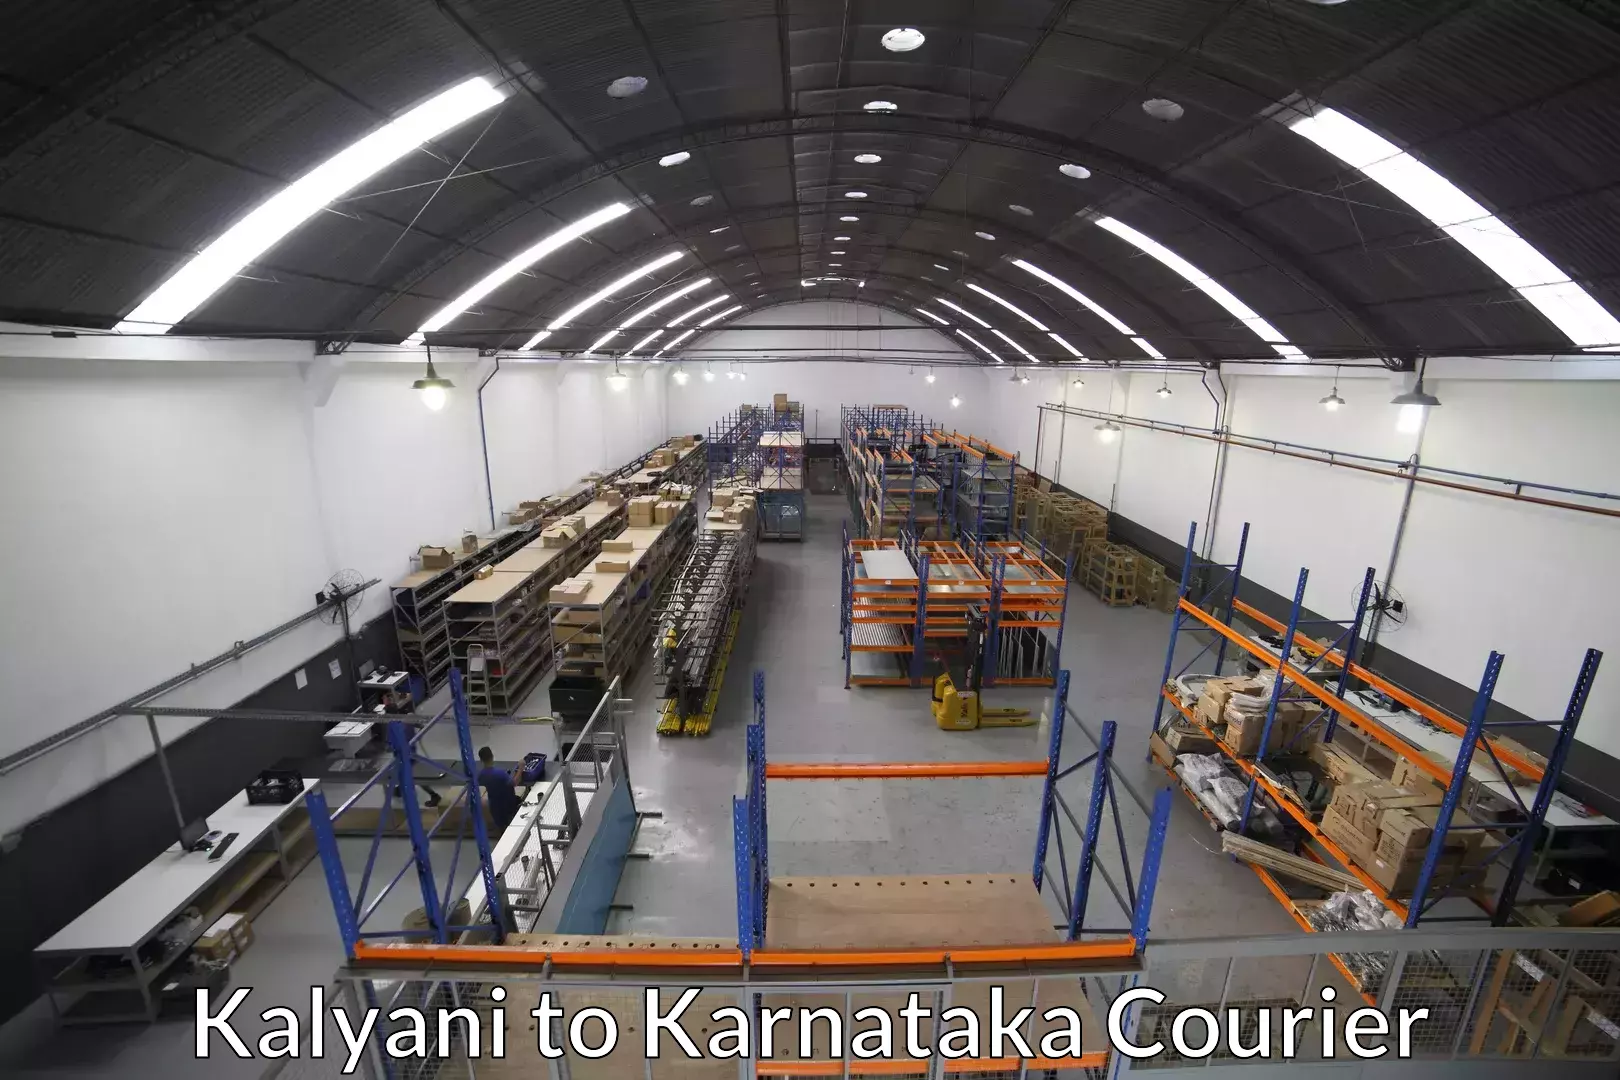 Furniture moving experts Kalyani to Karnataka